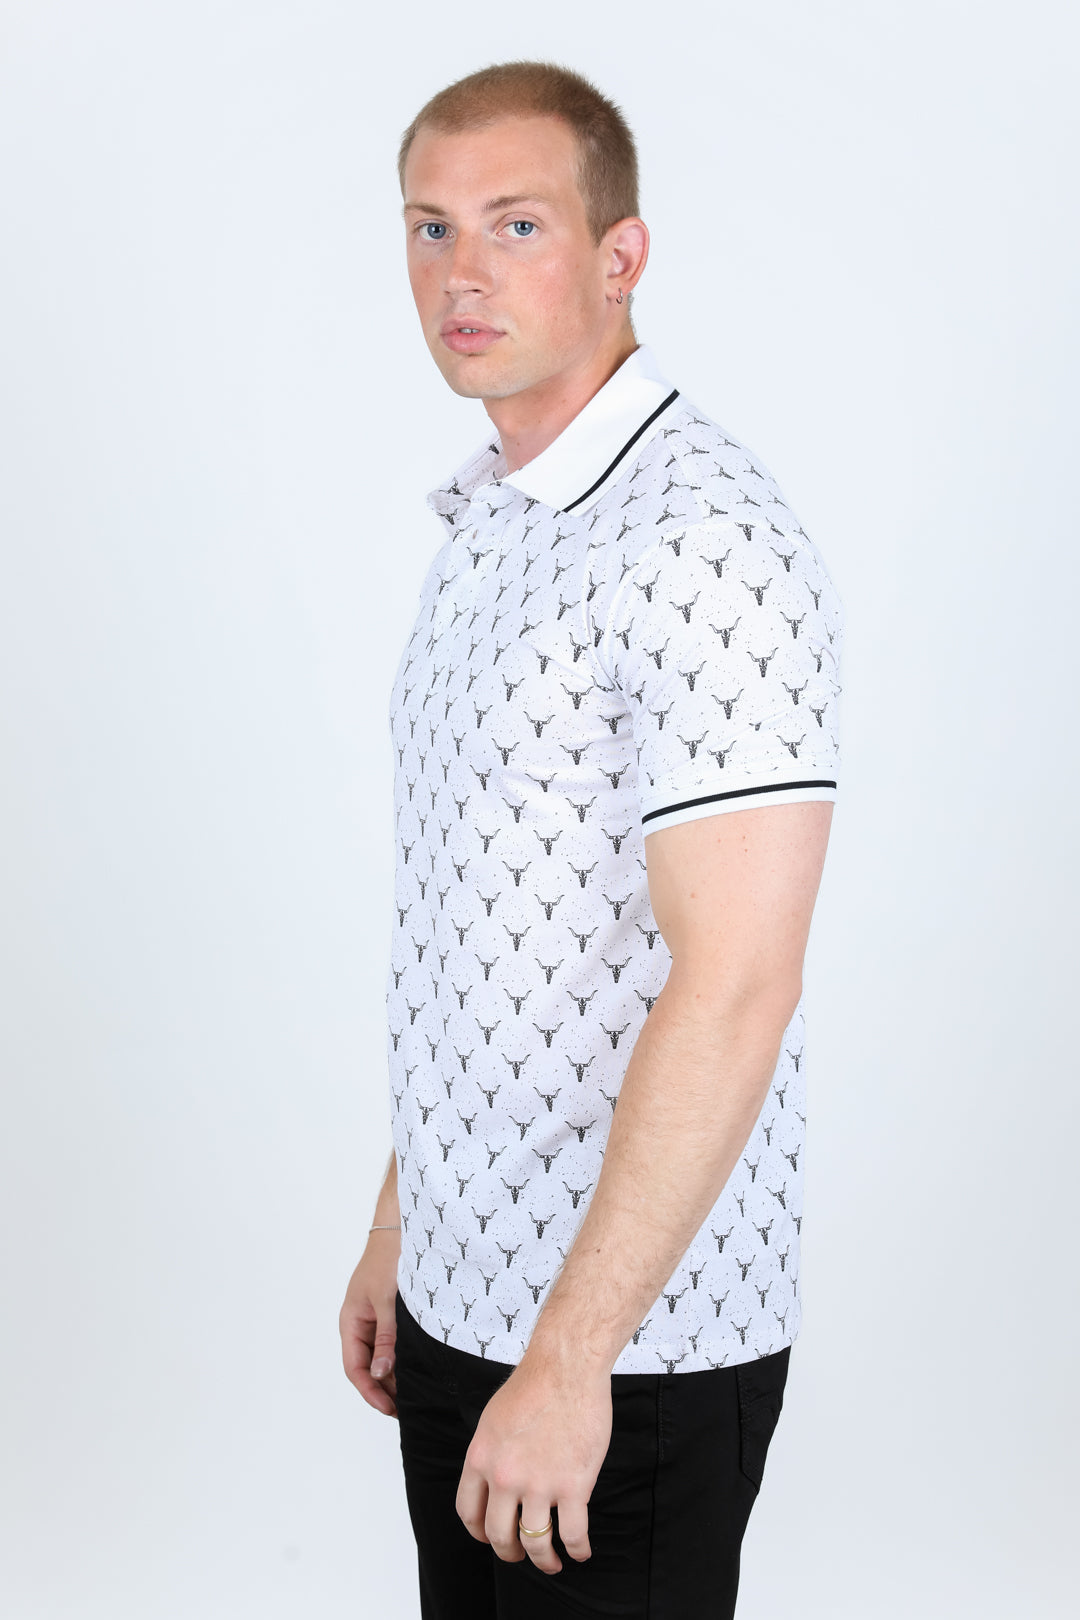 Premium Cotton Polo Shirt with Print - White